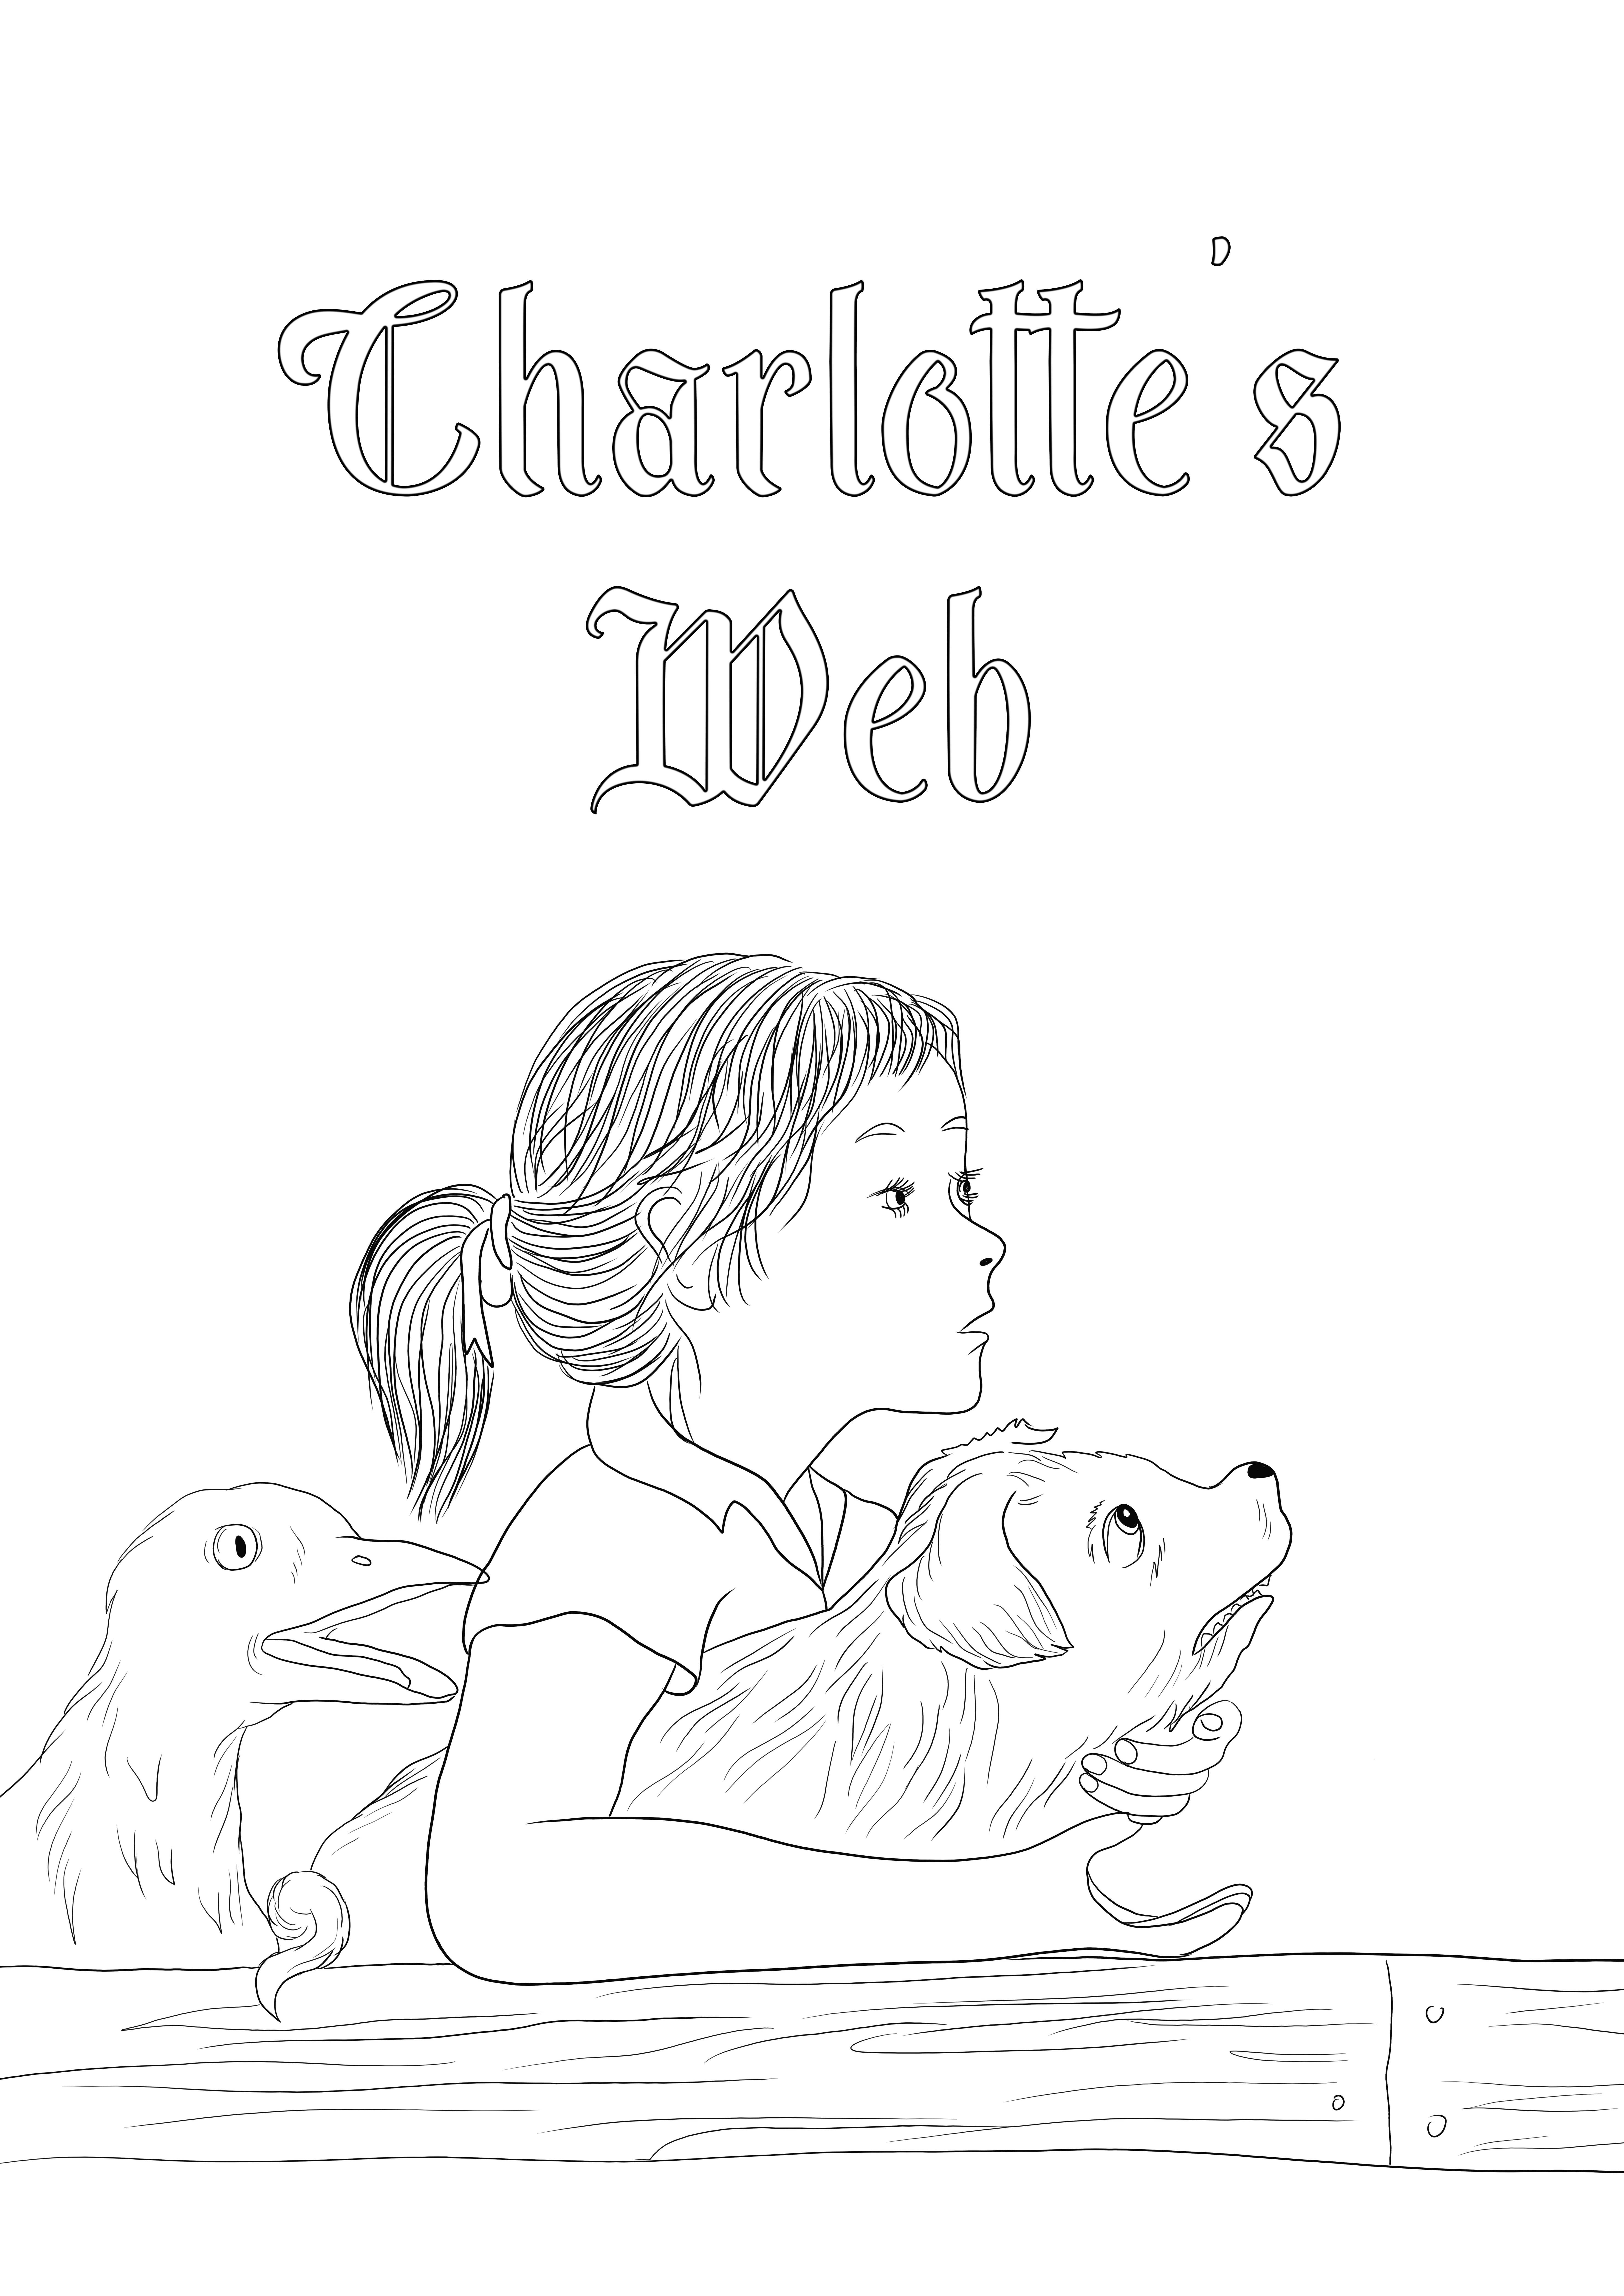 Imprimible gratis de personajes de Charlotte's Web para colorear y compartir con otros.